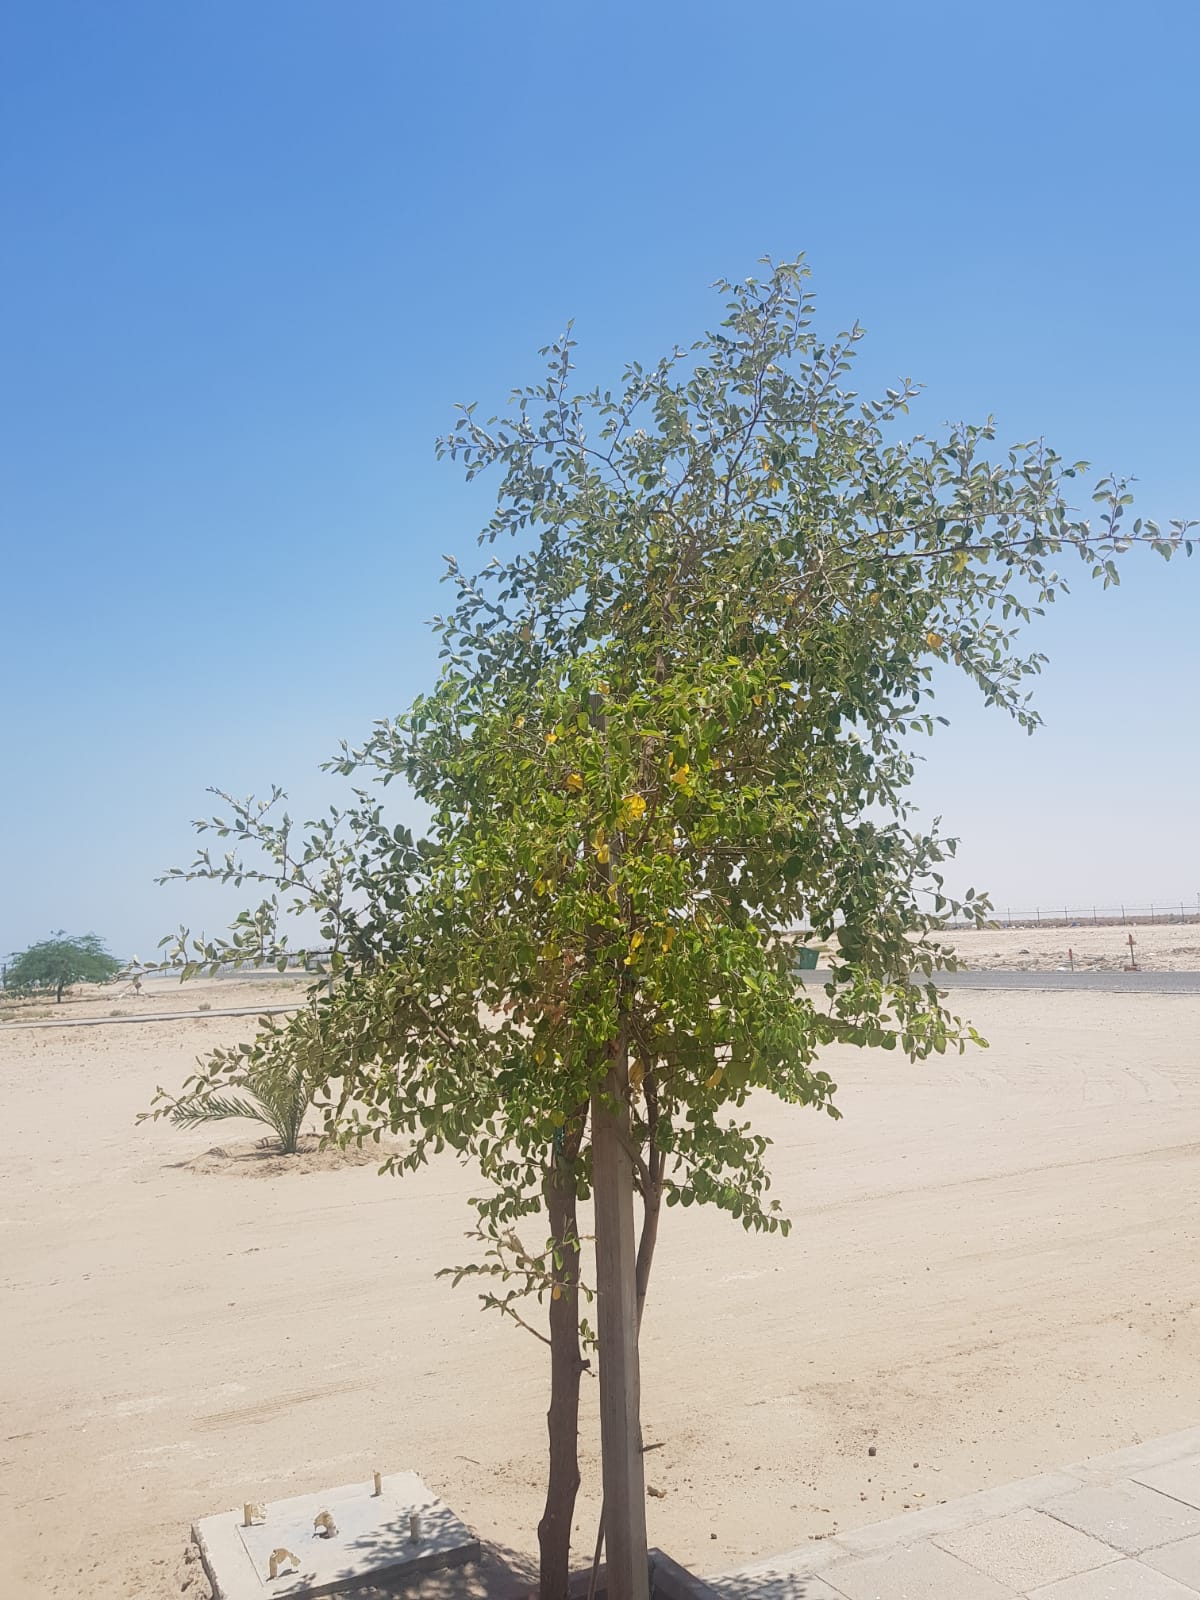 كونا السدرة شجرة مباركة غرسها الكويتيون في بيوتهم لفوائدها